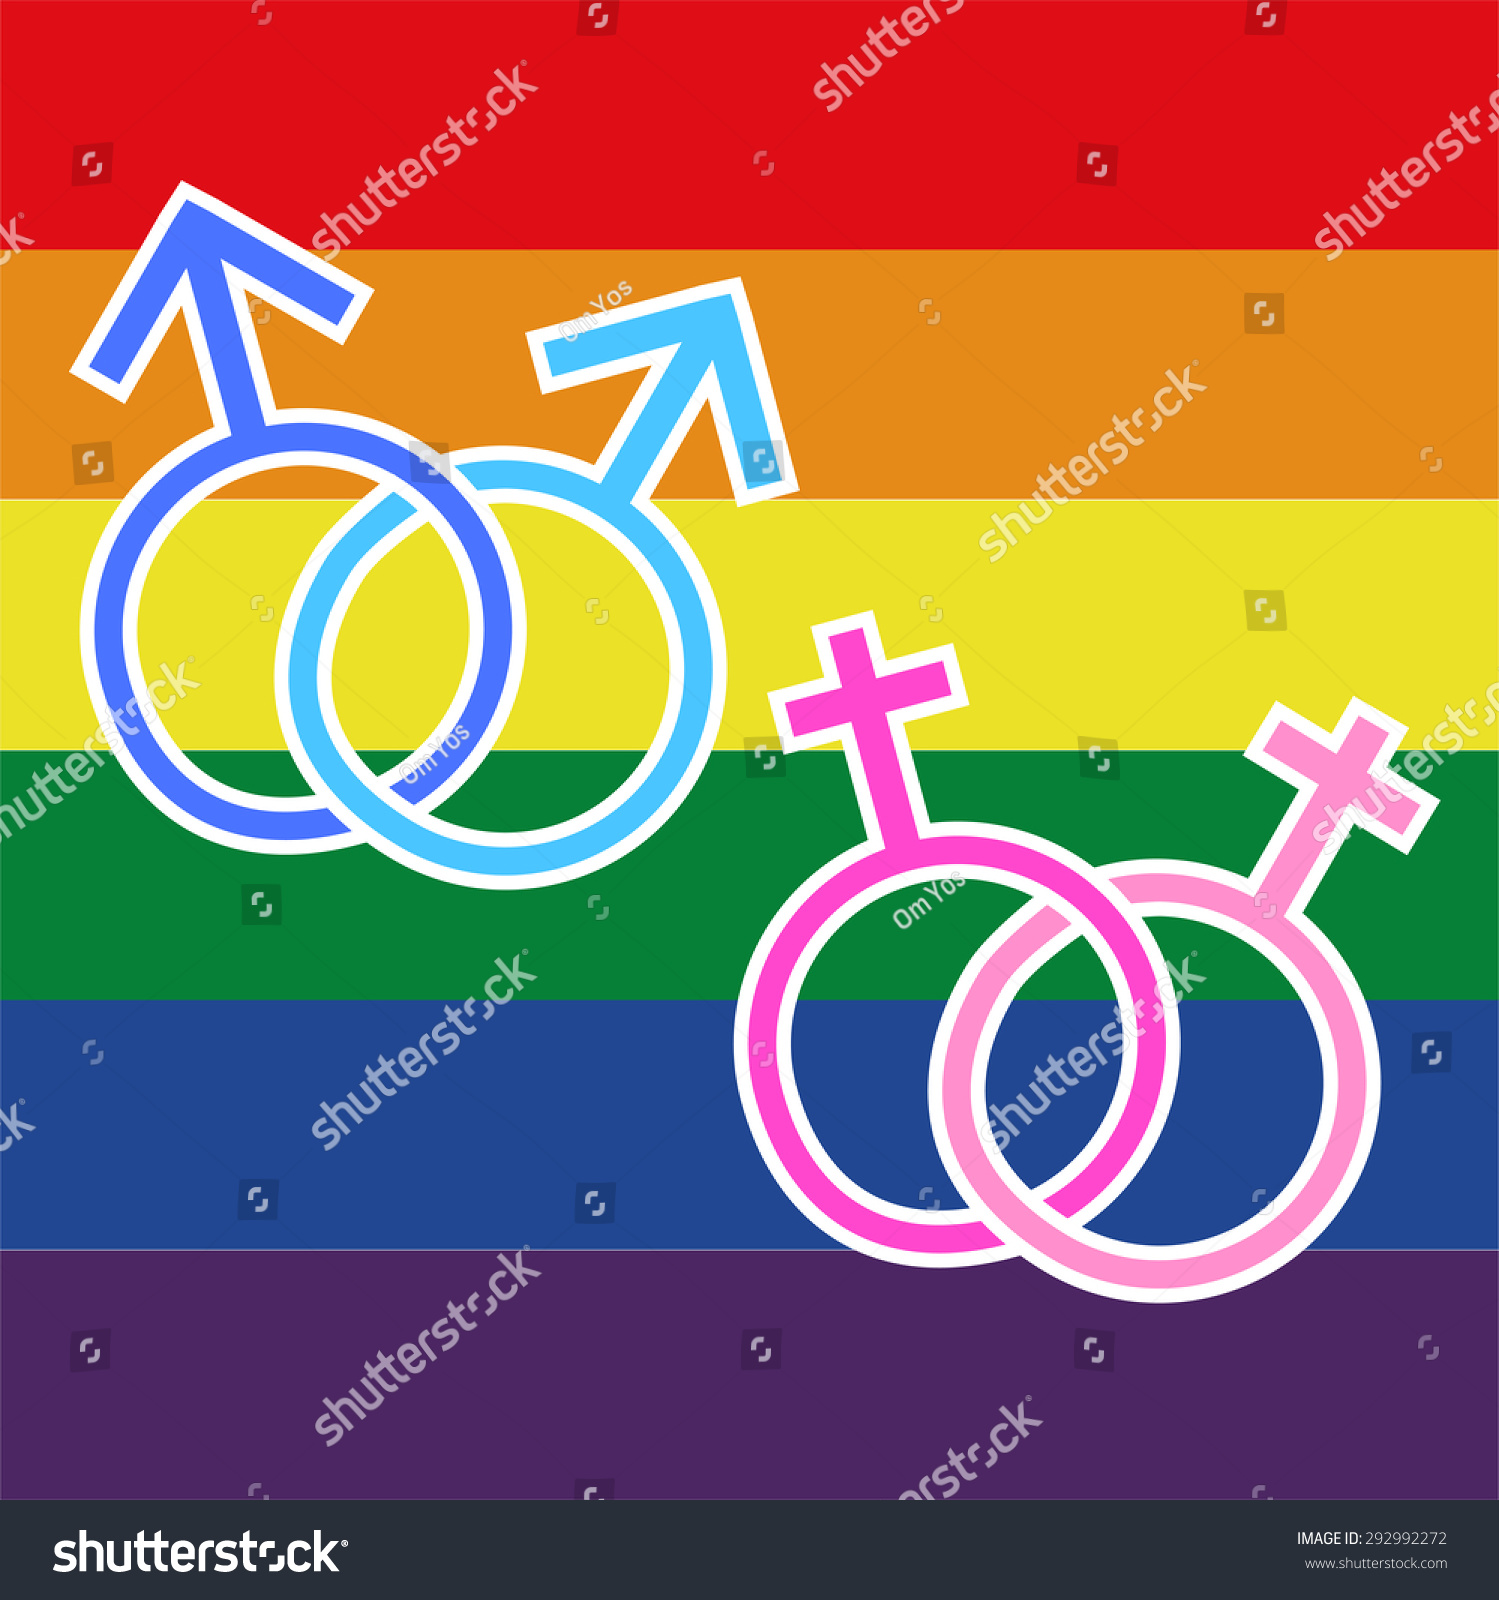 Illustration Homosexual Transgender Stock Vector 292992272 Shutterstock